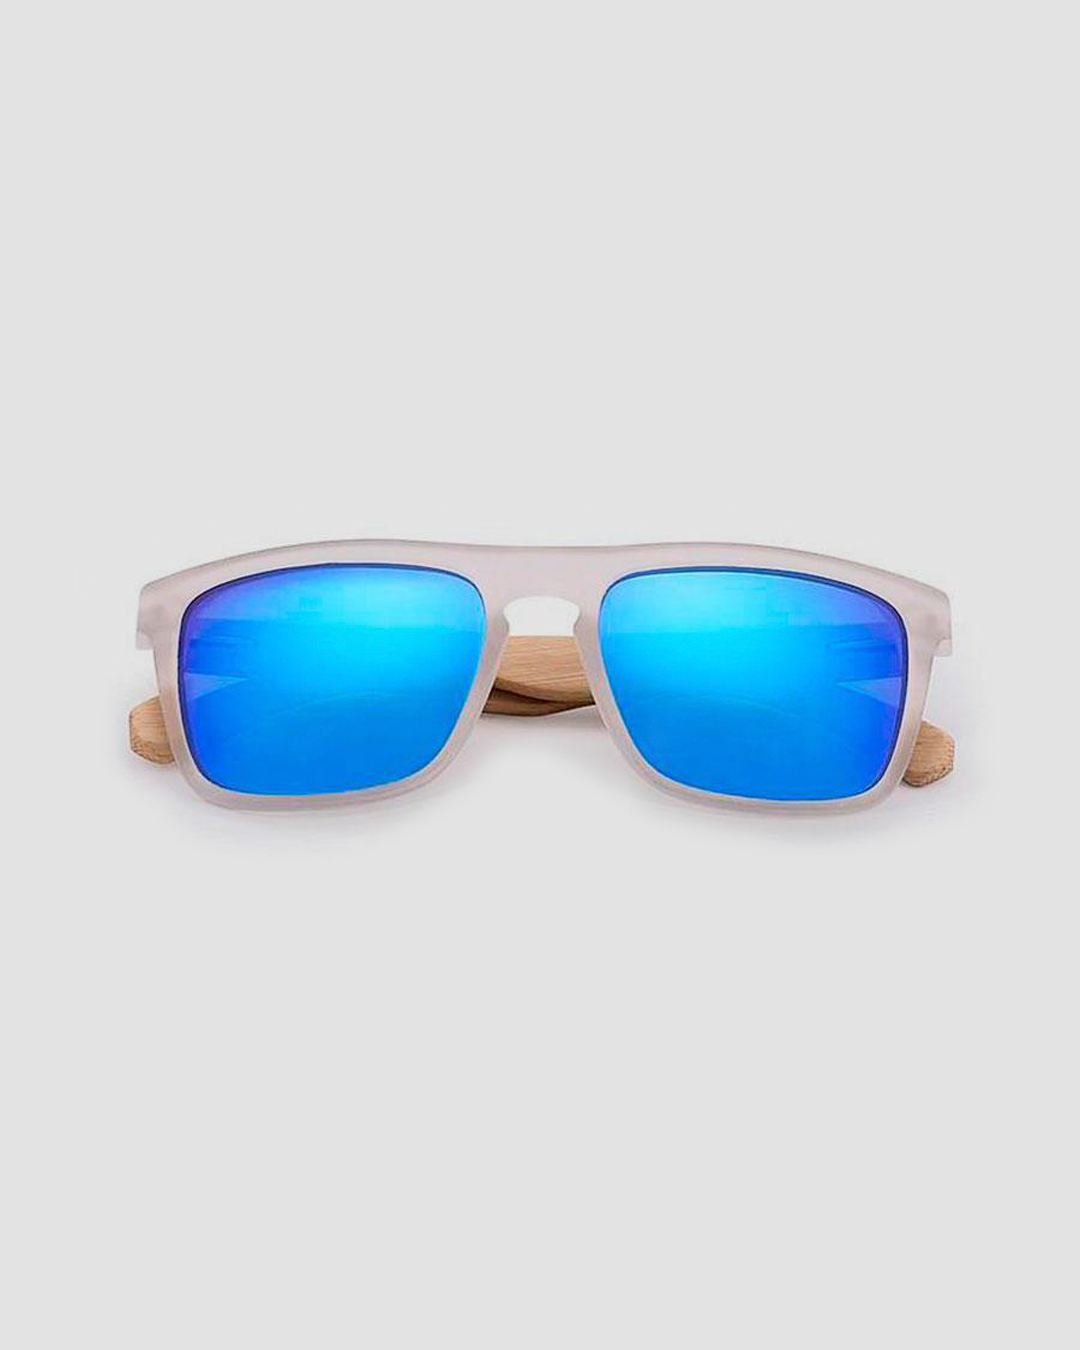 McCloud Sunglasses